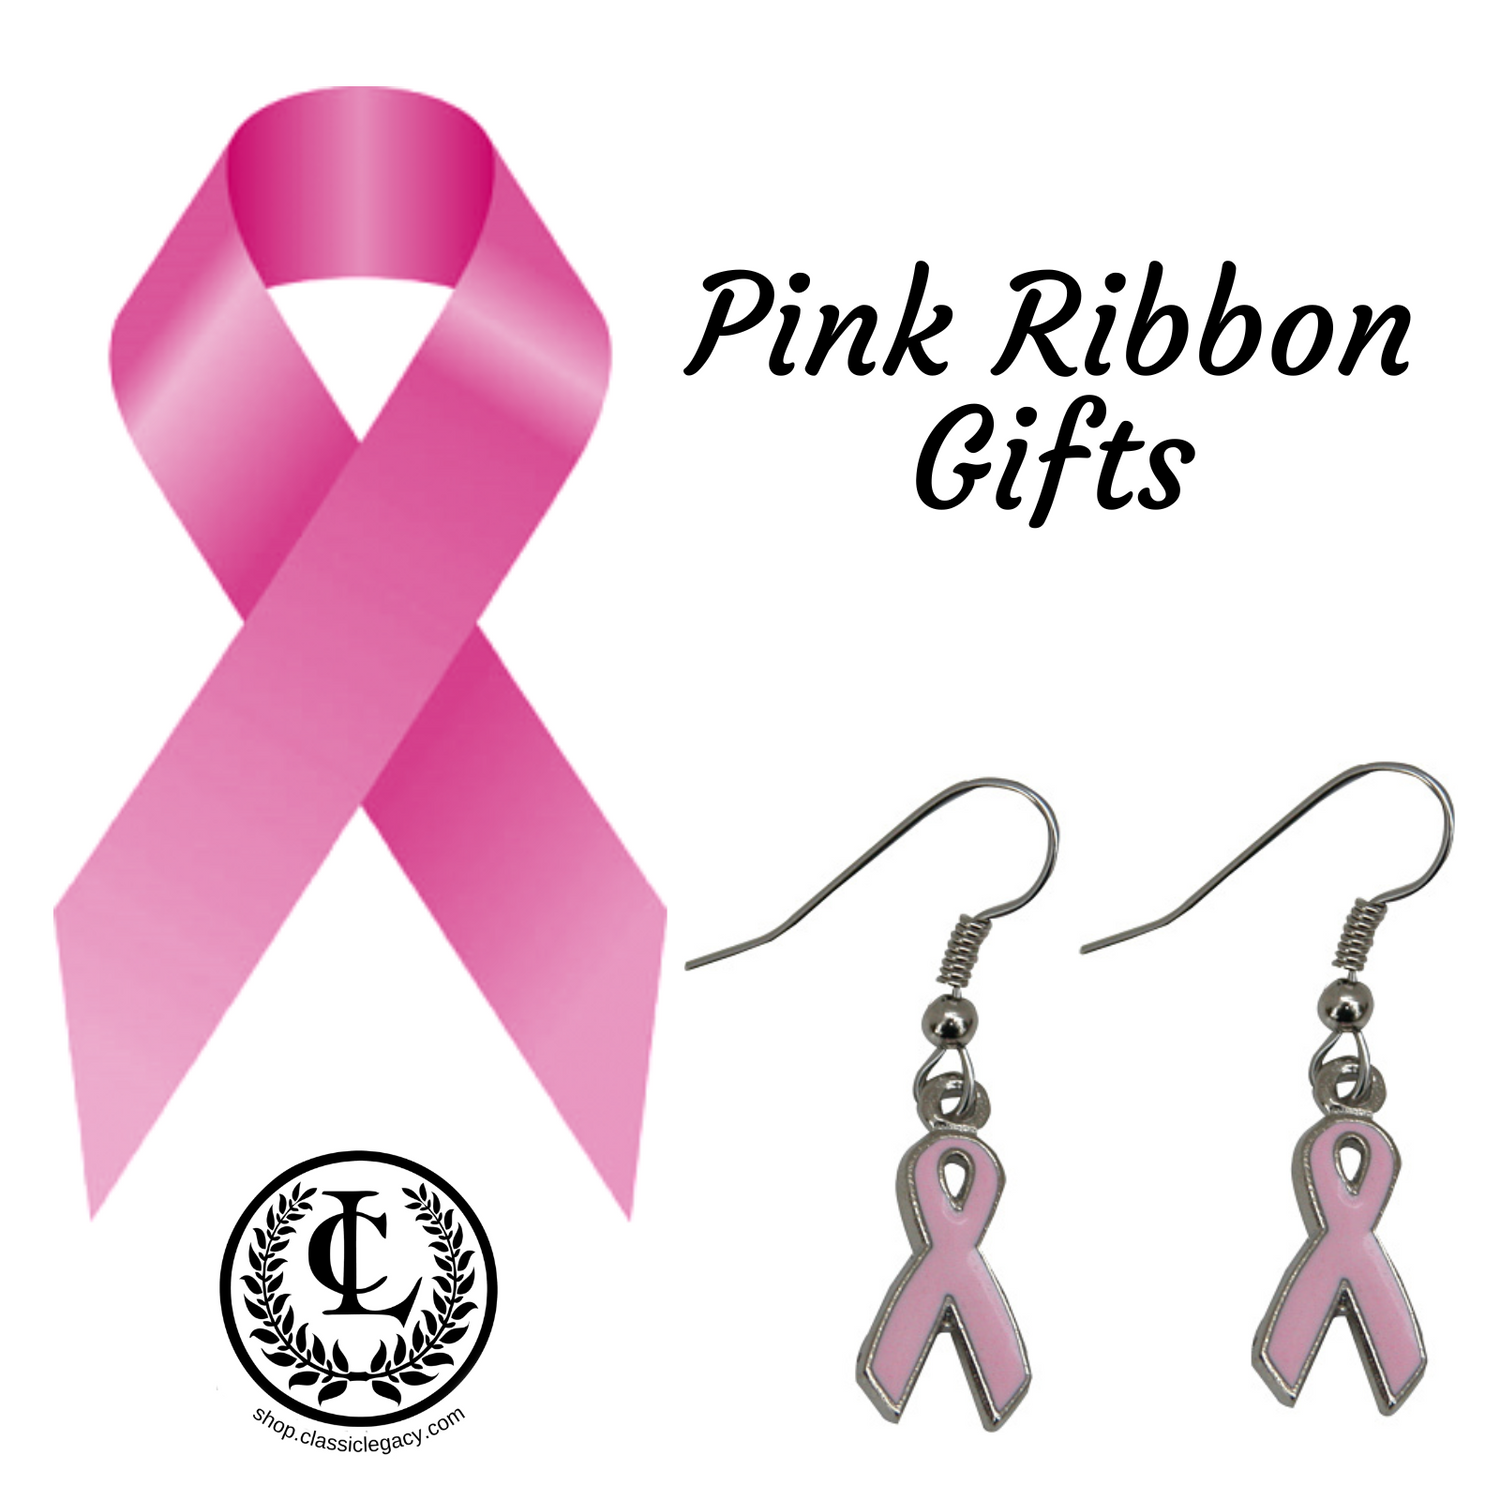 Pink Ribbon Gifts